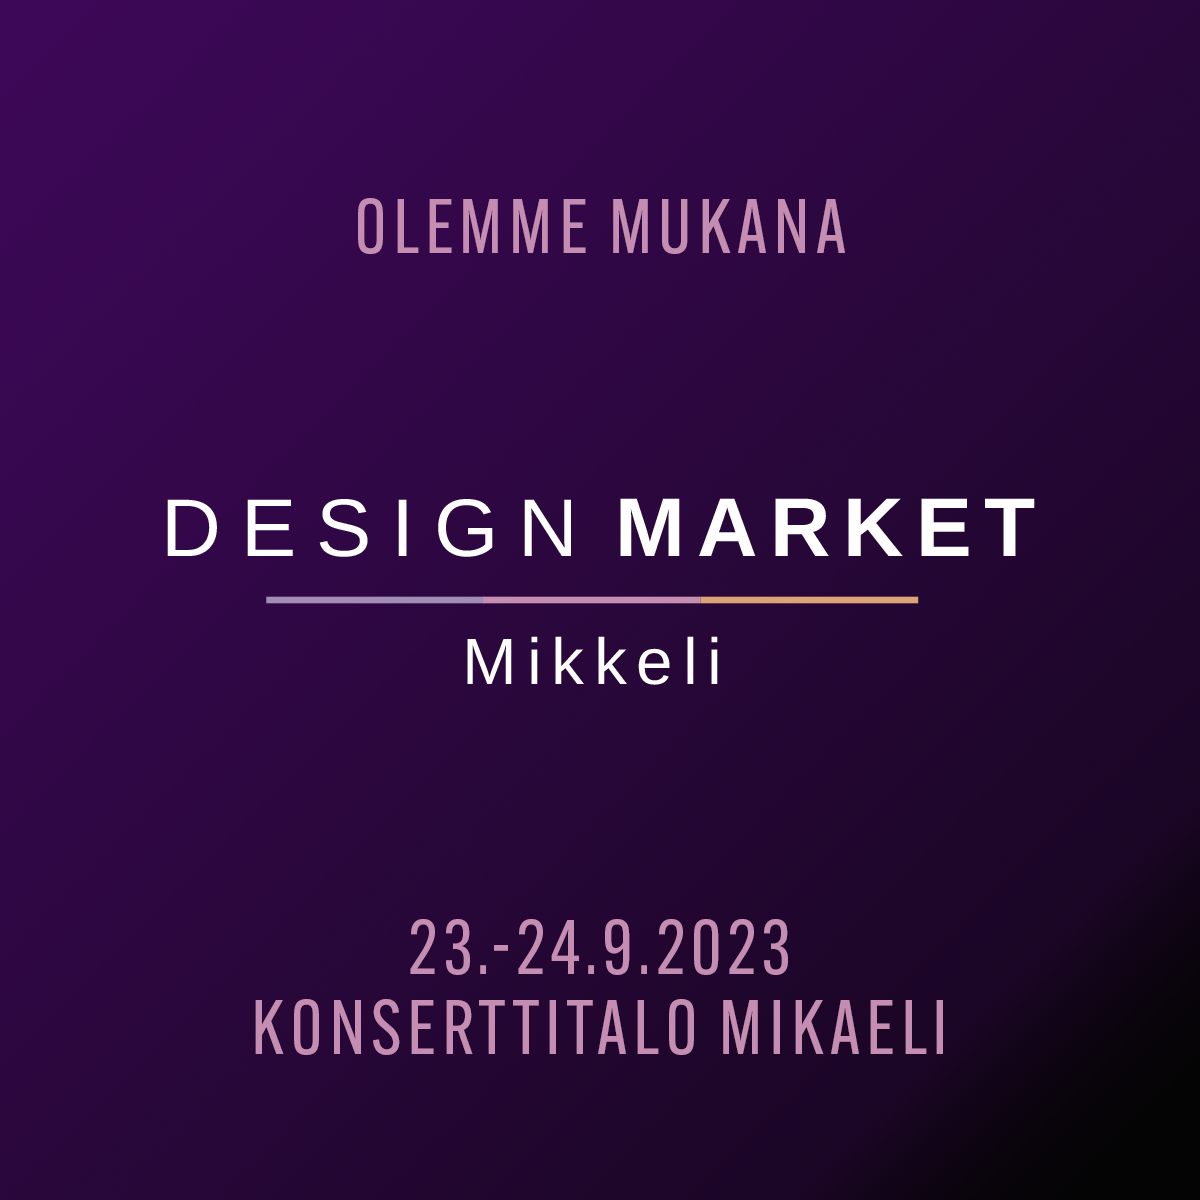 Olemme-mukana-Design-market-Mikkeli-2023-nelio.png